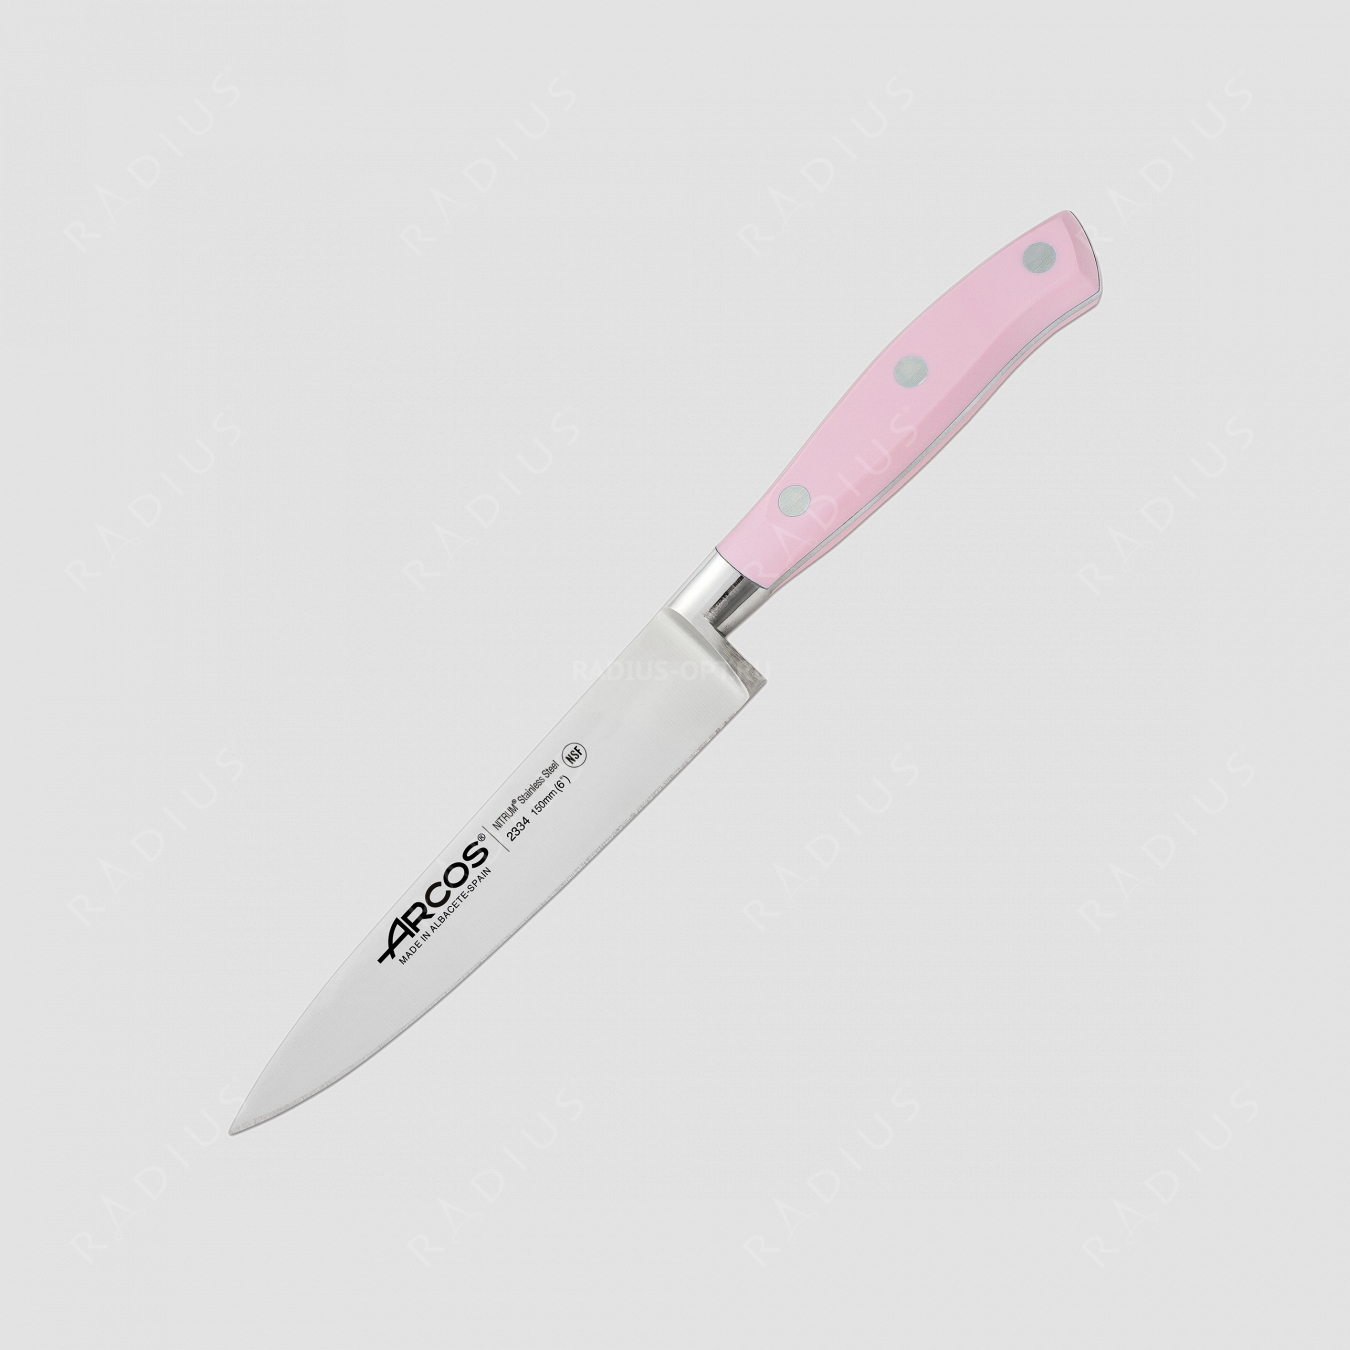 Профессиональный поварской кухонный нож «Шеф» 15 см, серия Riviera Rose, ARCOS, Испания